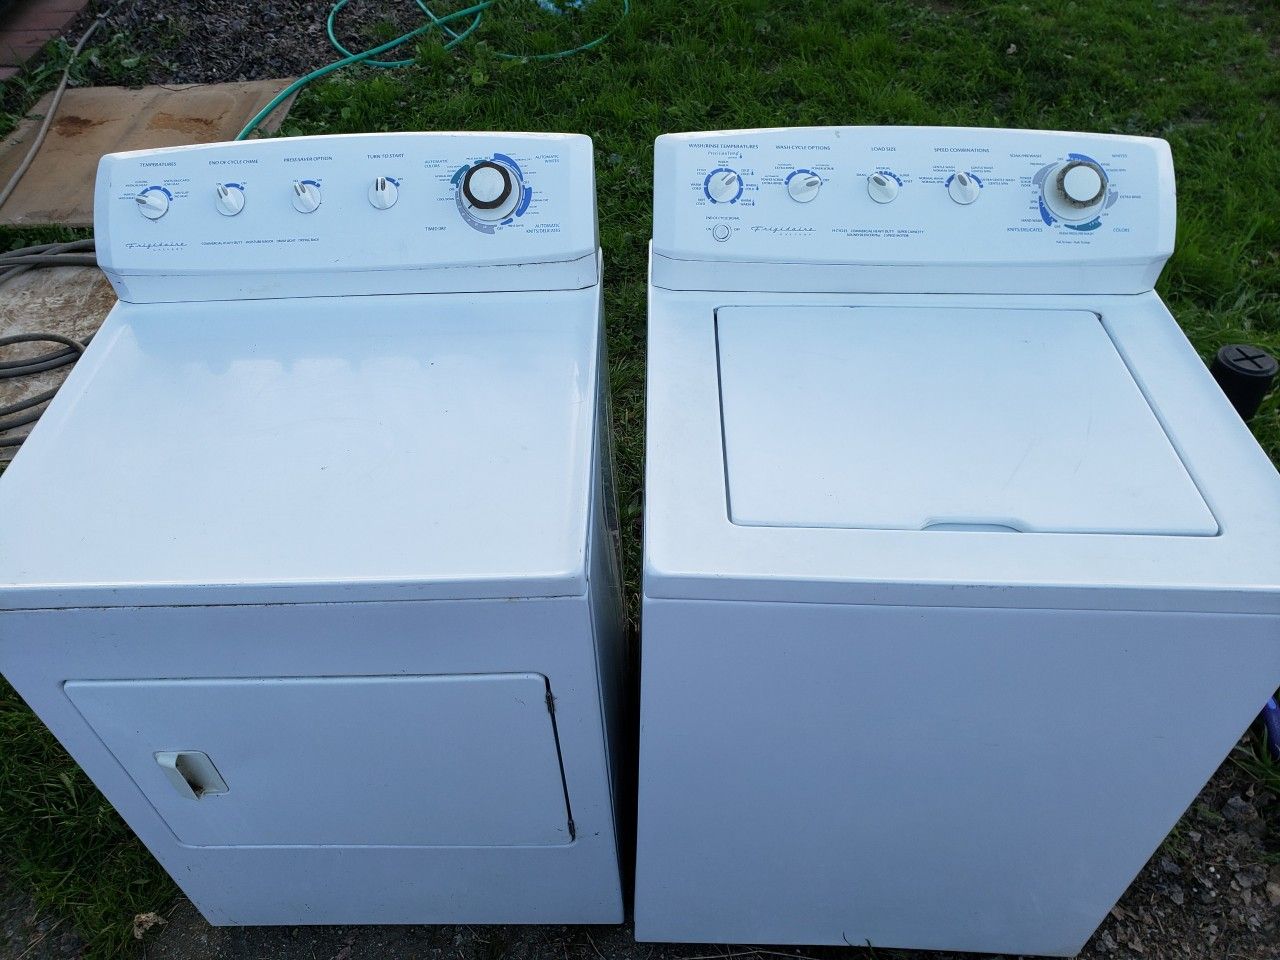 Frigidaire washer & dryer